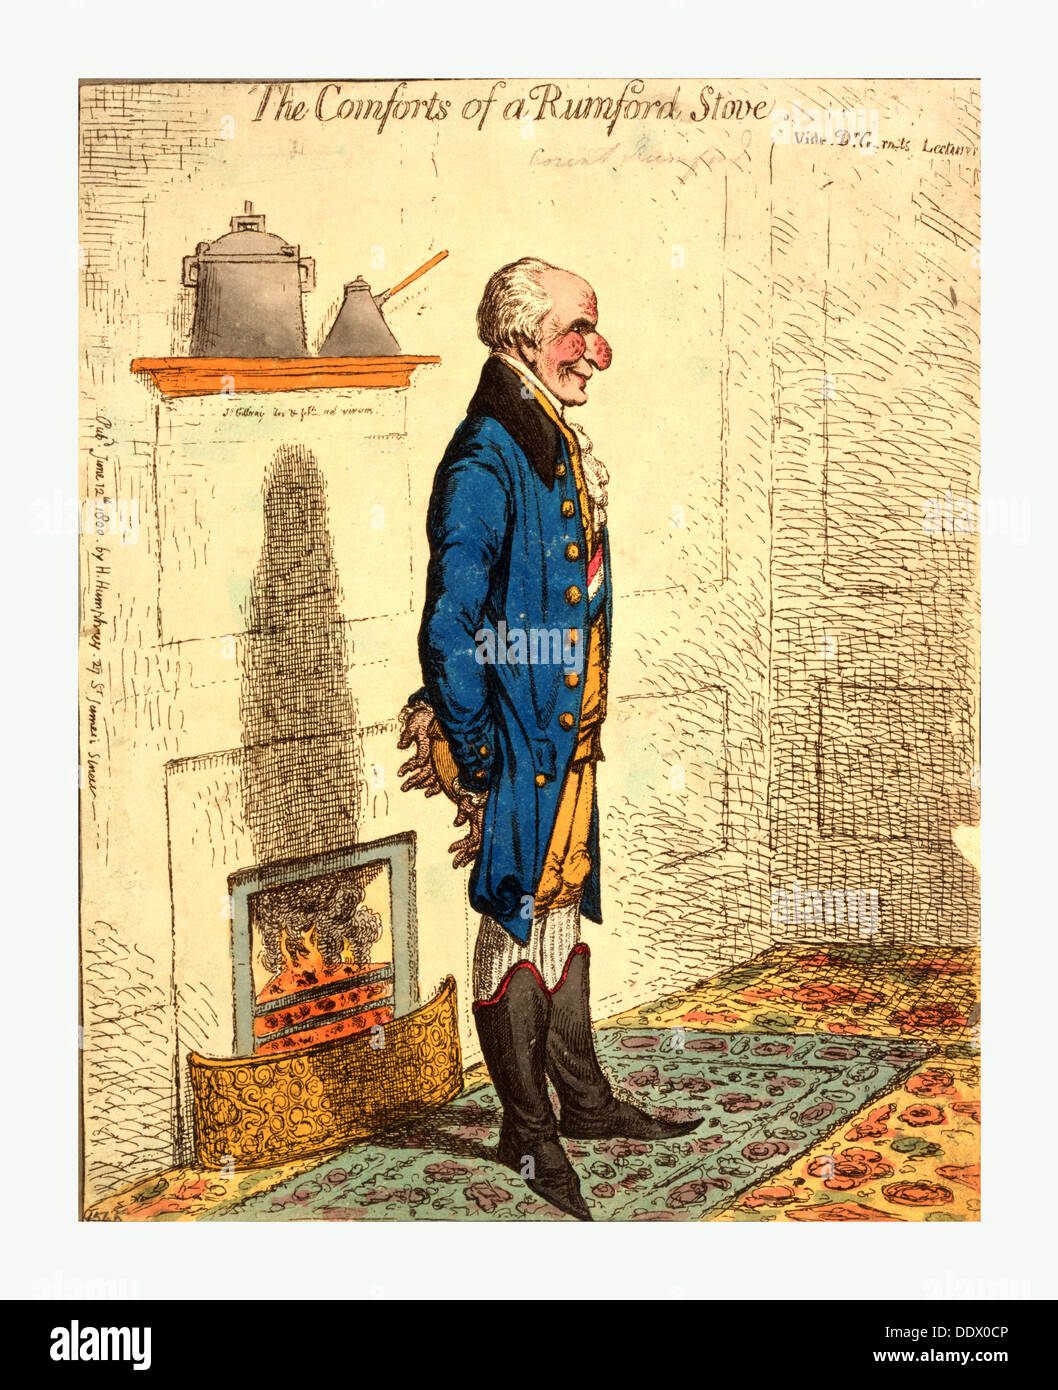 Den Komfort von einem Rumford Ofen Vide Dr. G-Rn-ts Vorträge / Gillray, James, 1756-1815, Gravieren 1800 Stockfoto